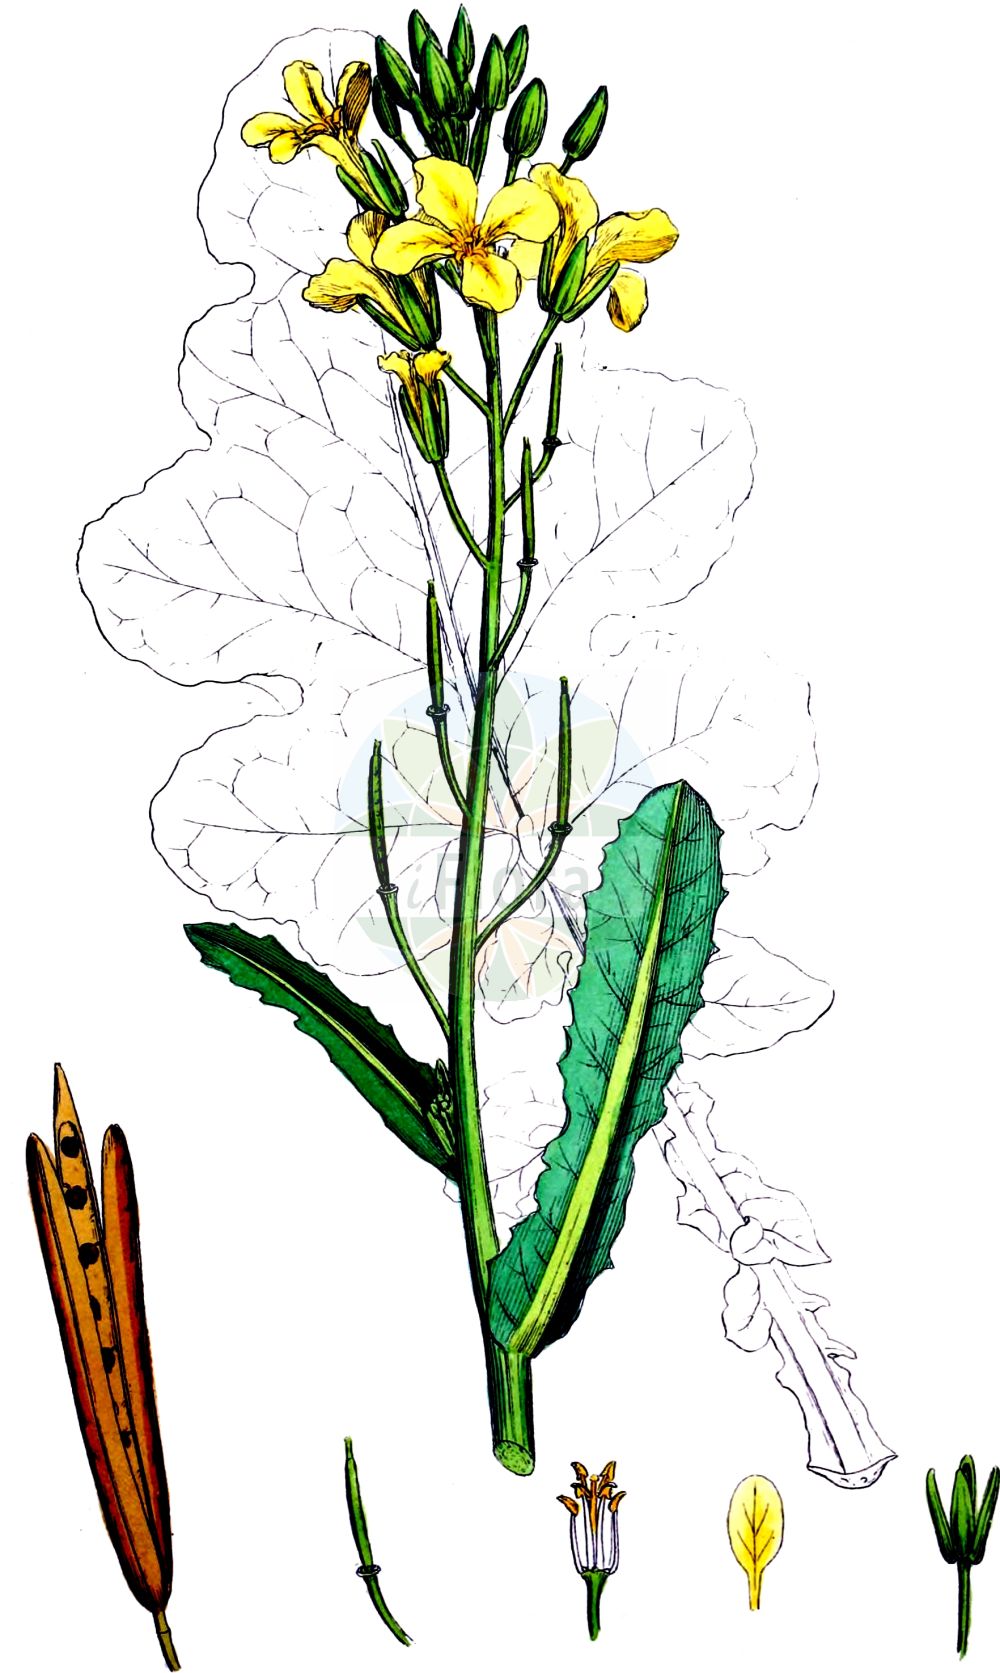 Historische Abbildung von Brassica oleracea (Gemüse-Kohl - Cabbage). Das Bild zeigt Blatt, Bluete, Frucht und Same. ---- Historical Drawing of Brassica oleracea (Gemüse-Kohl - Cabbage). The image is showing leaf, flower, fruit and seed.(Brassica oleracea,Gemüse-Kohl,Cabbage,Brassica oleracea,Gemuese-Kohl,Cabbage,Wild Cabbage,Brassica,Kohl,Brassicas,Brassicaceae,Kreuzblütler,Cabbage family,Blatt,Bluete,Frucht,Same,leaf,flower,fruit,seed,Sowerby (1790-1813))